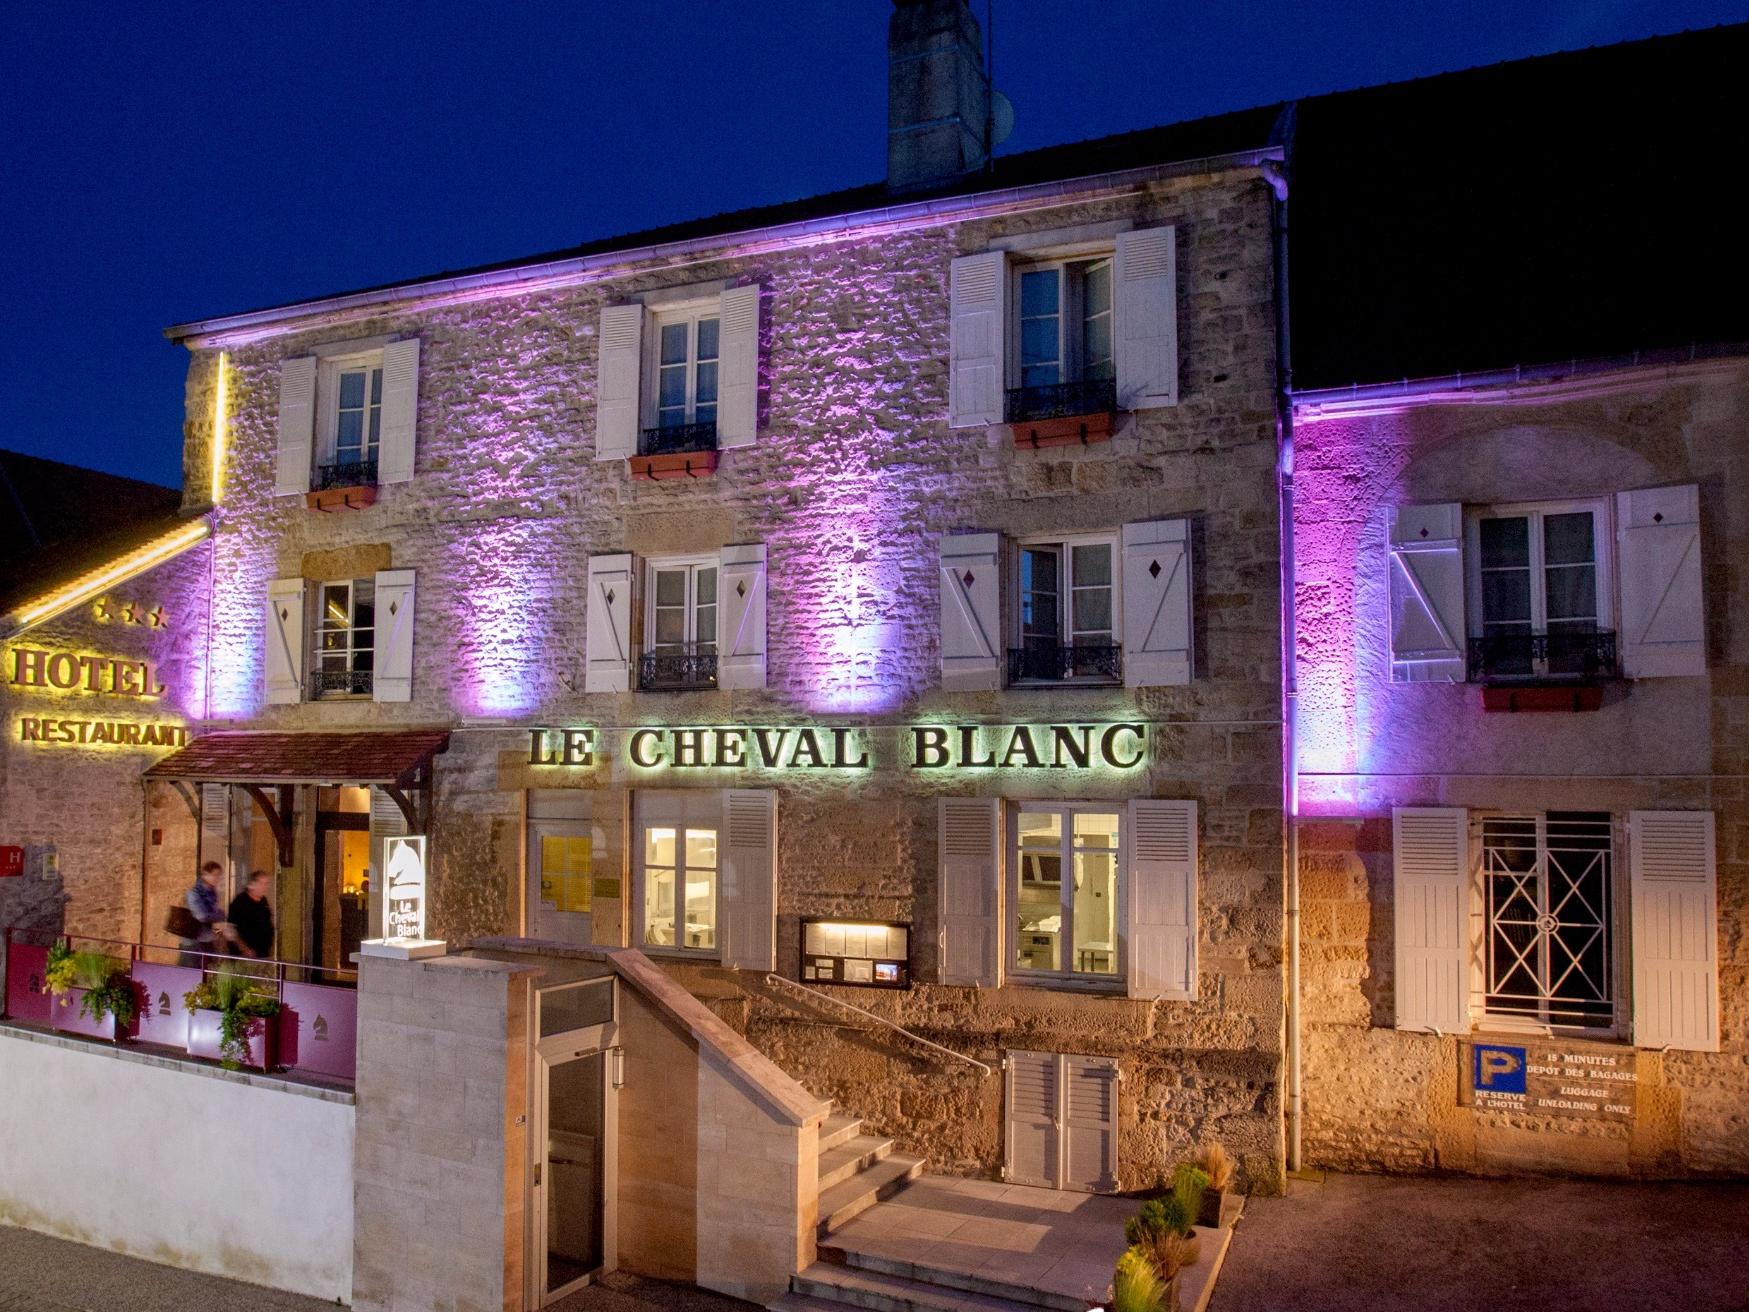 Logis Hôtel du Cheval Blanc